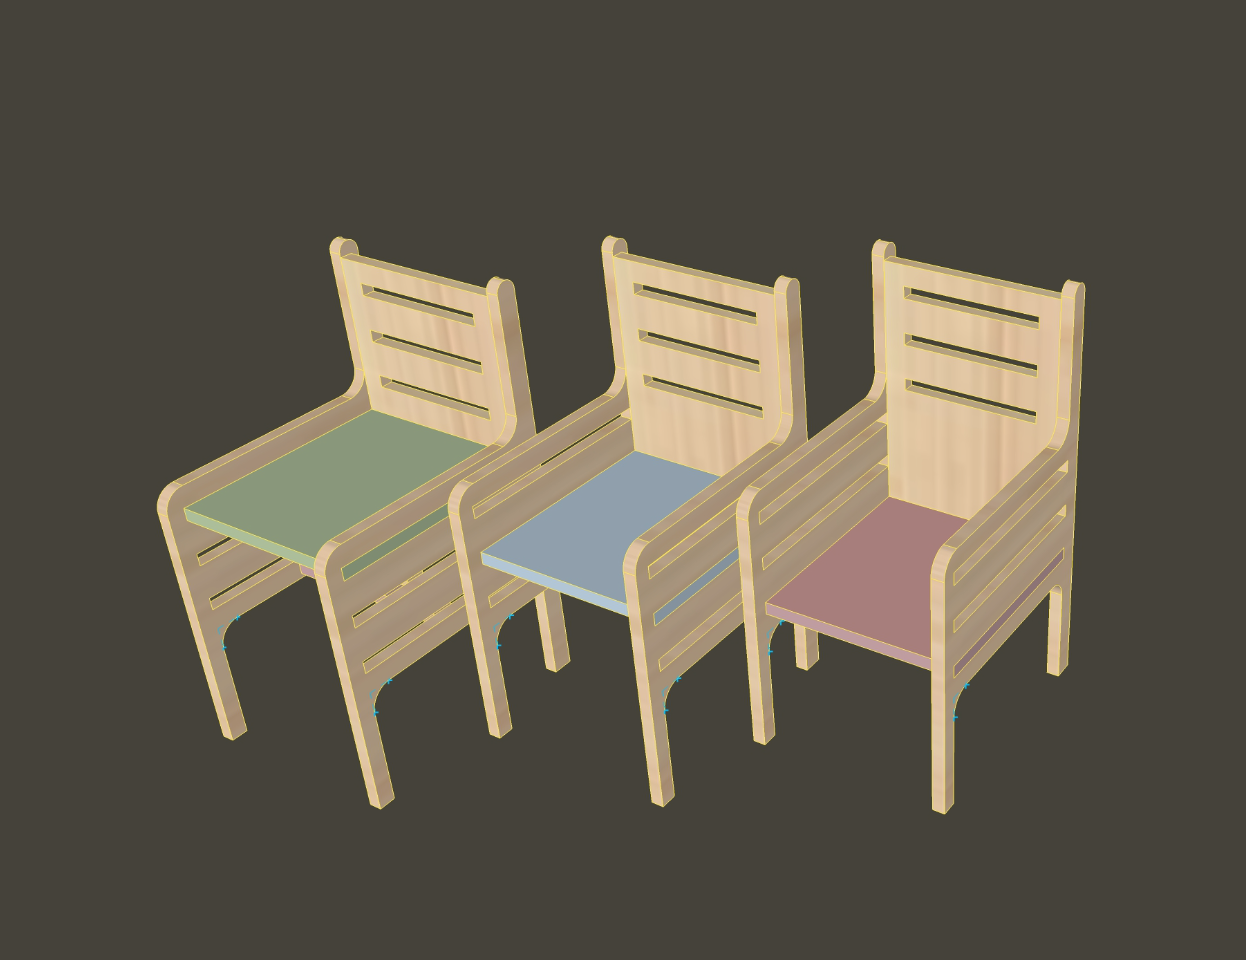 Kinderstoel op verschillende hoogtes met kleurrijke zittingen.